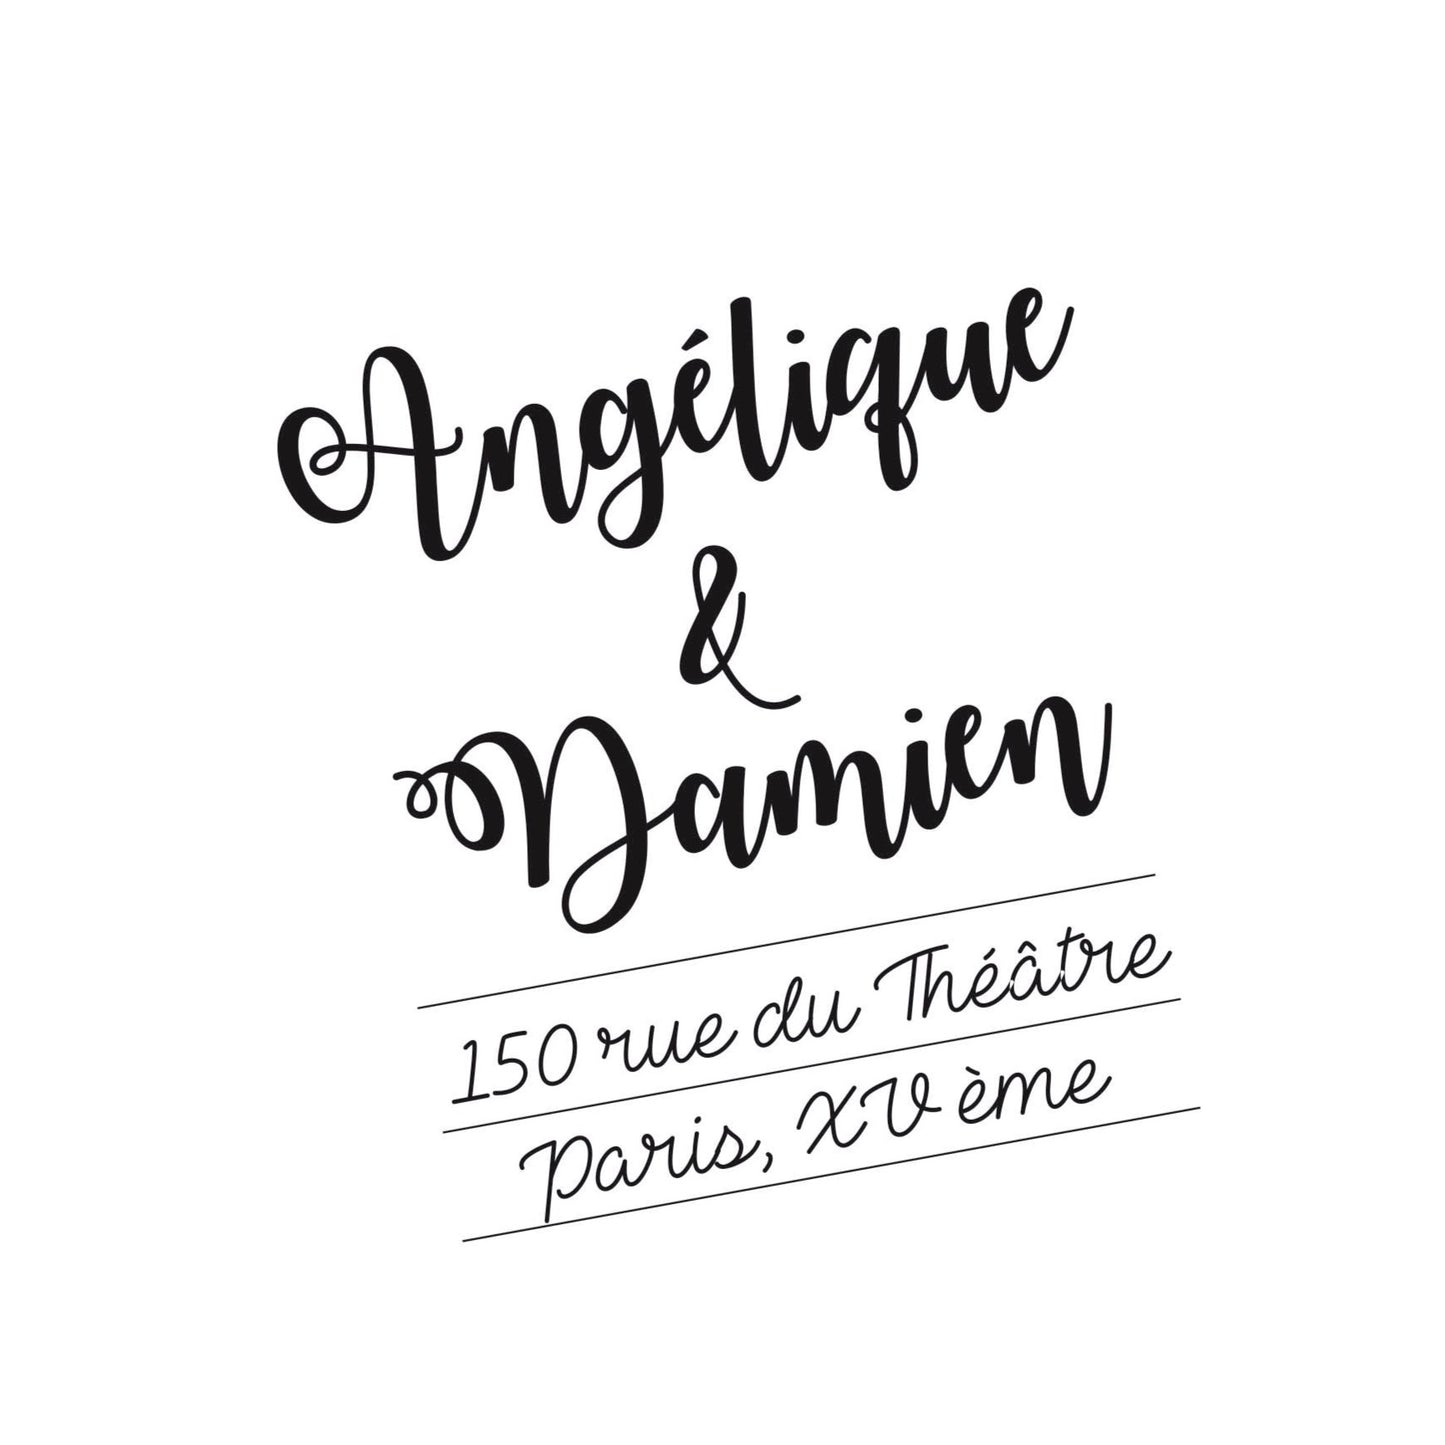 Le tampon Angélique et Damien est né de l'envie de faire un tampon dans lequel on retrouve de la bonne humeur, de la danse, de la joie, l'odeur des tartines grillées, les balades à deux et surtout l'amour. Voici l'histoire de ce modèle